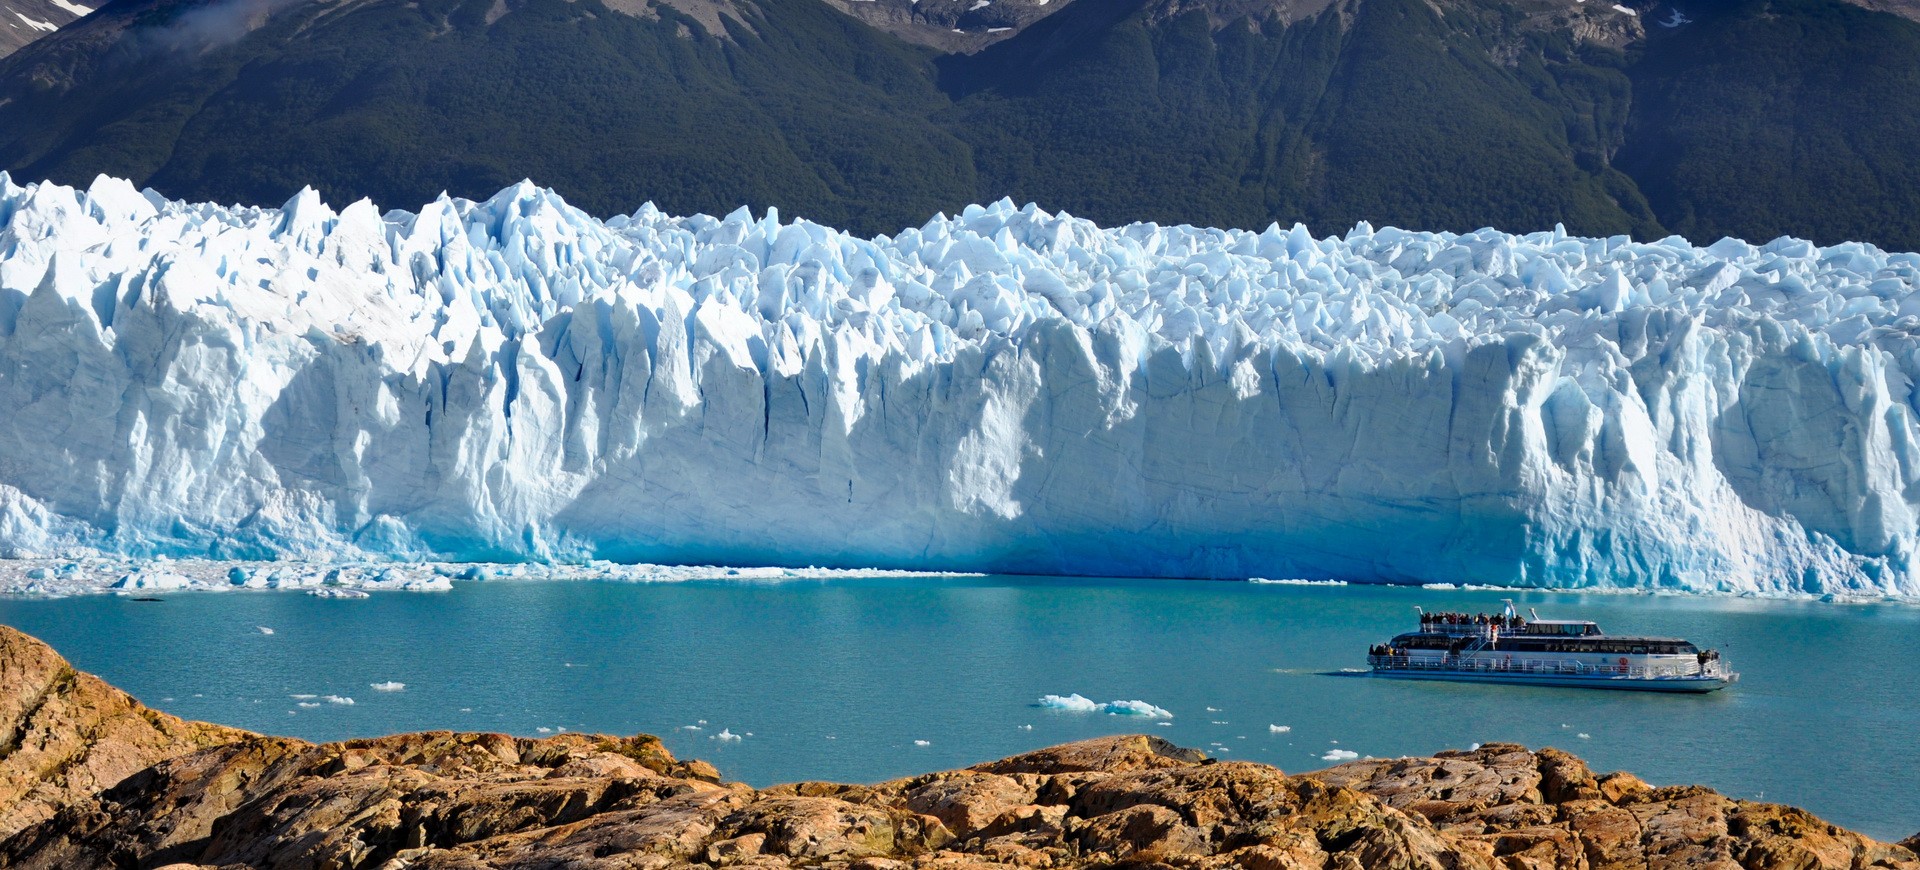 Argentine El Calafate Perito Moreno Glacier